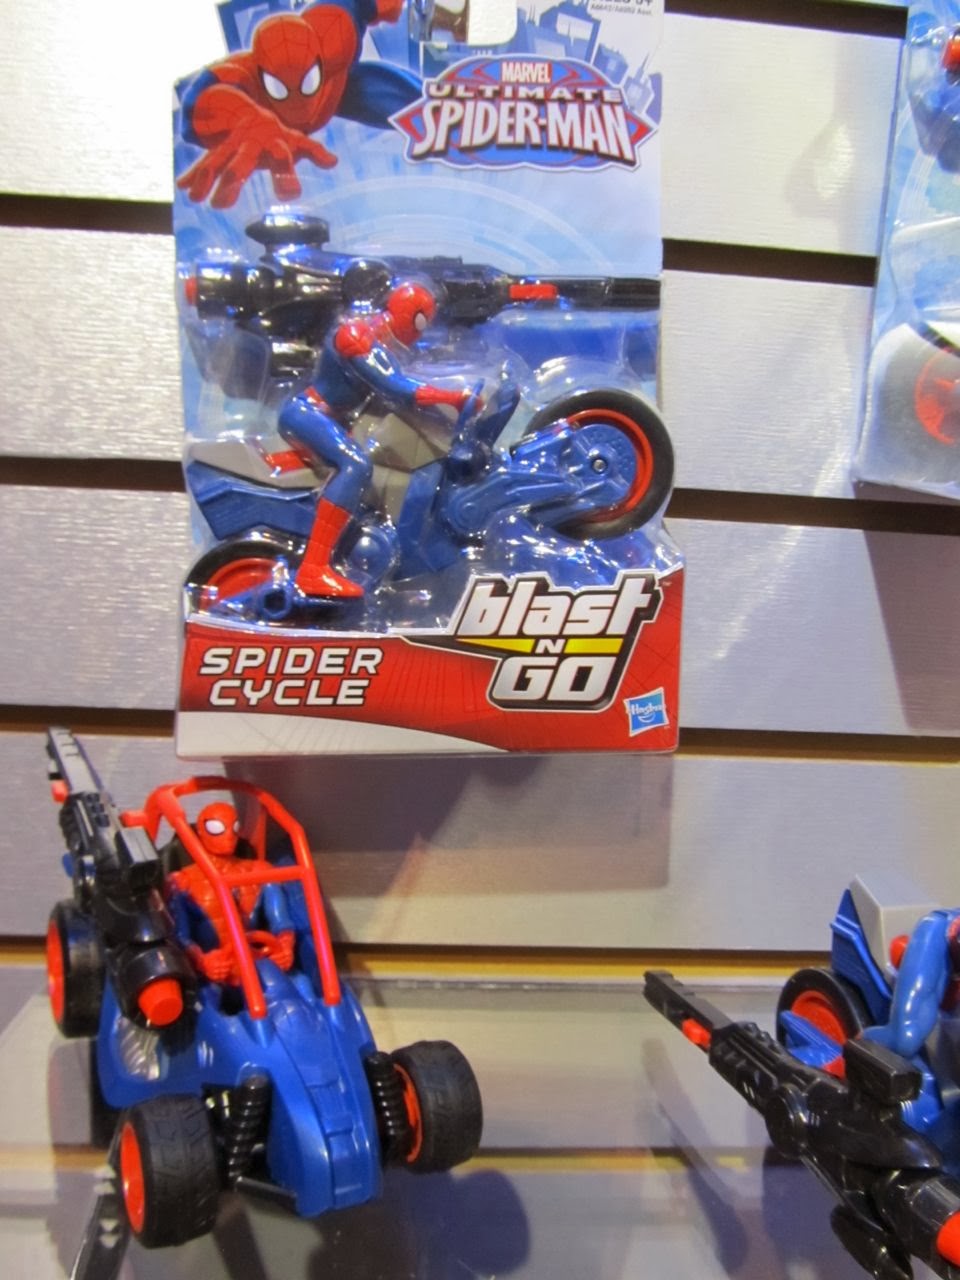 habro-spider-man-42